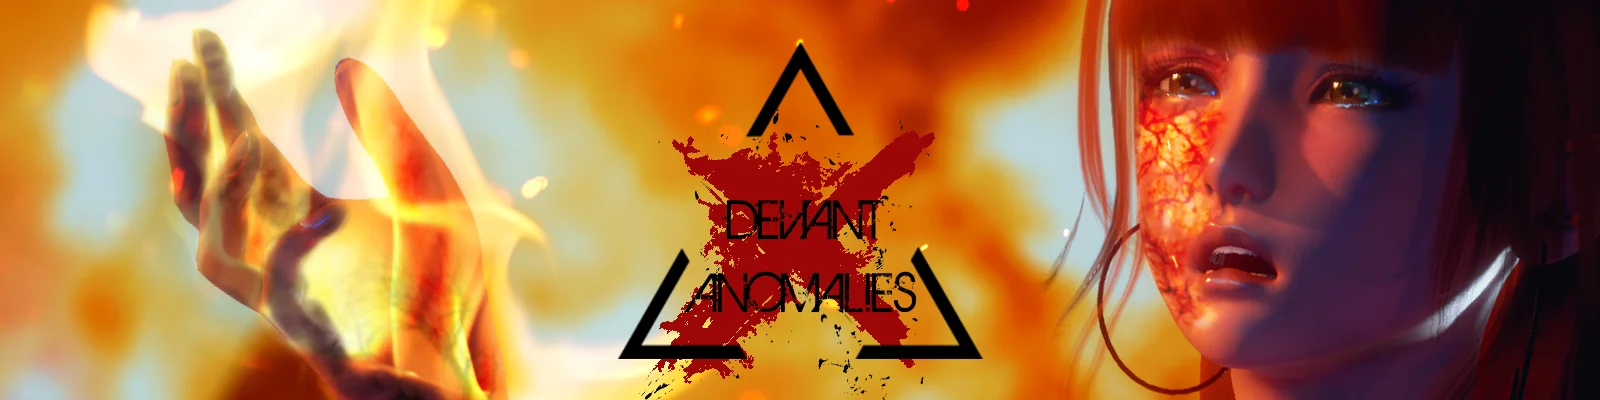 Deviant Anomalies v.0.9.5